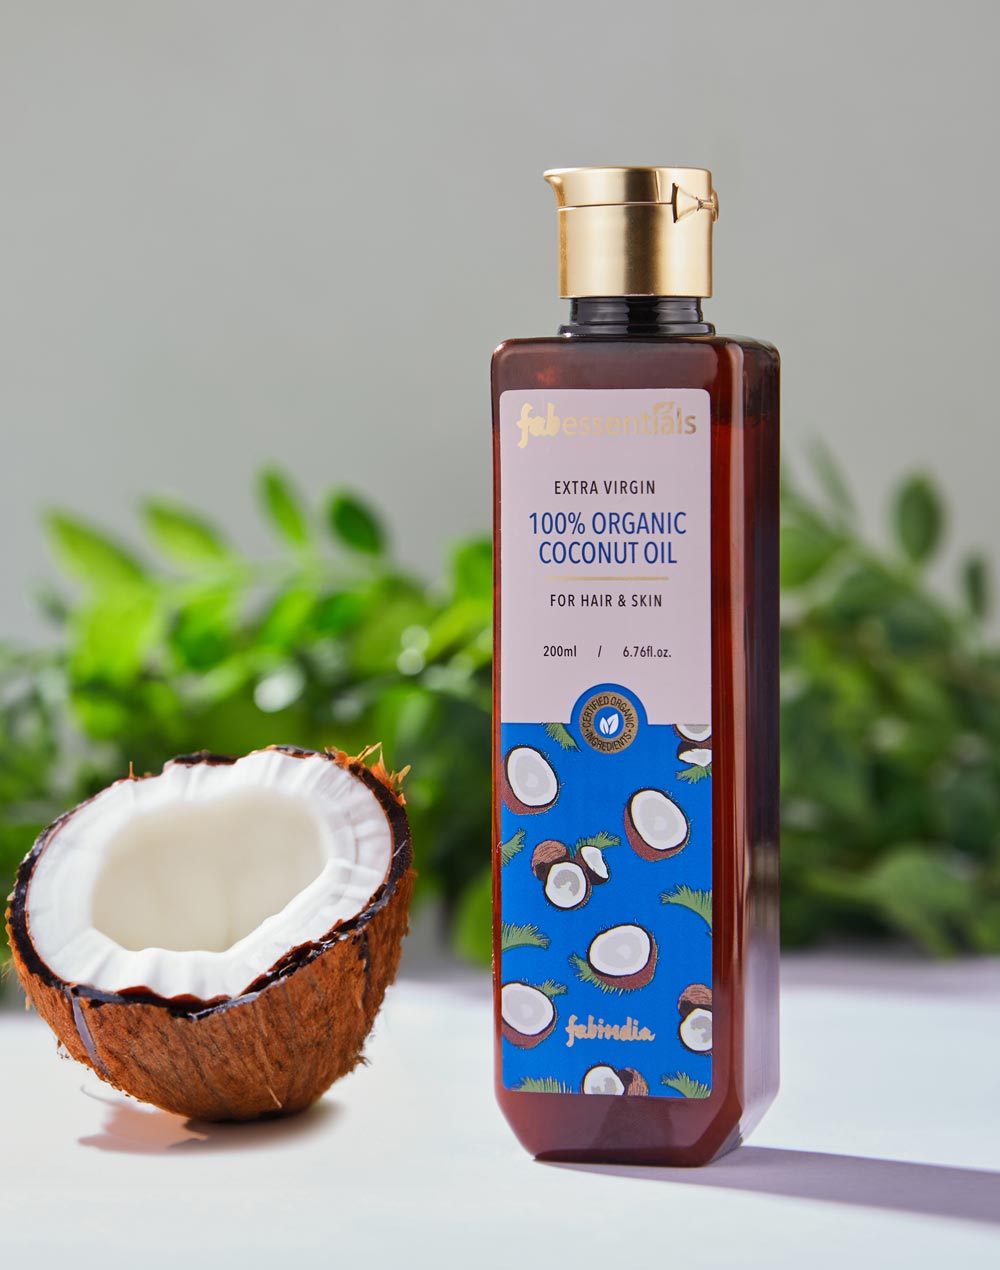 Fabessentials 100% Organic Coconut Oil